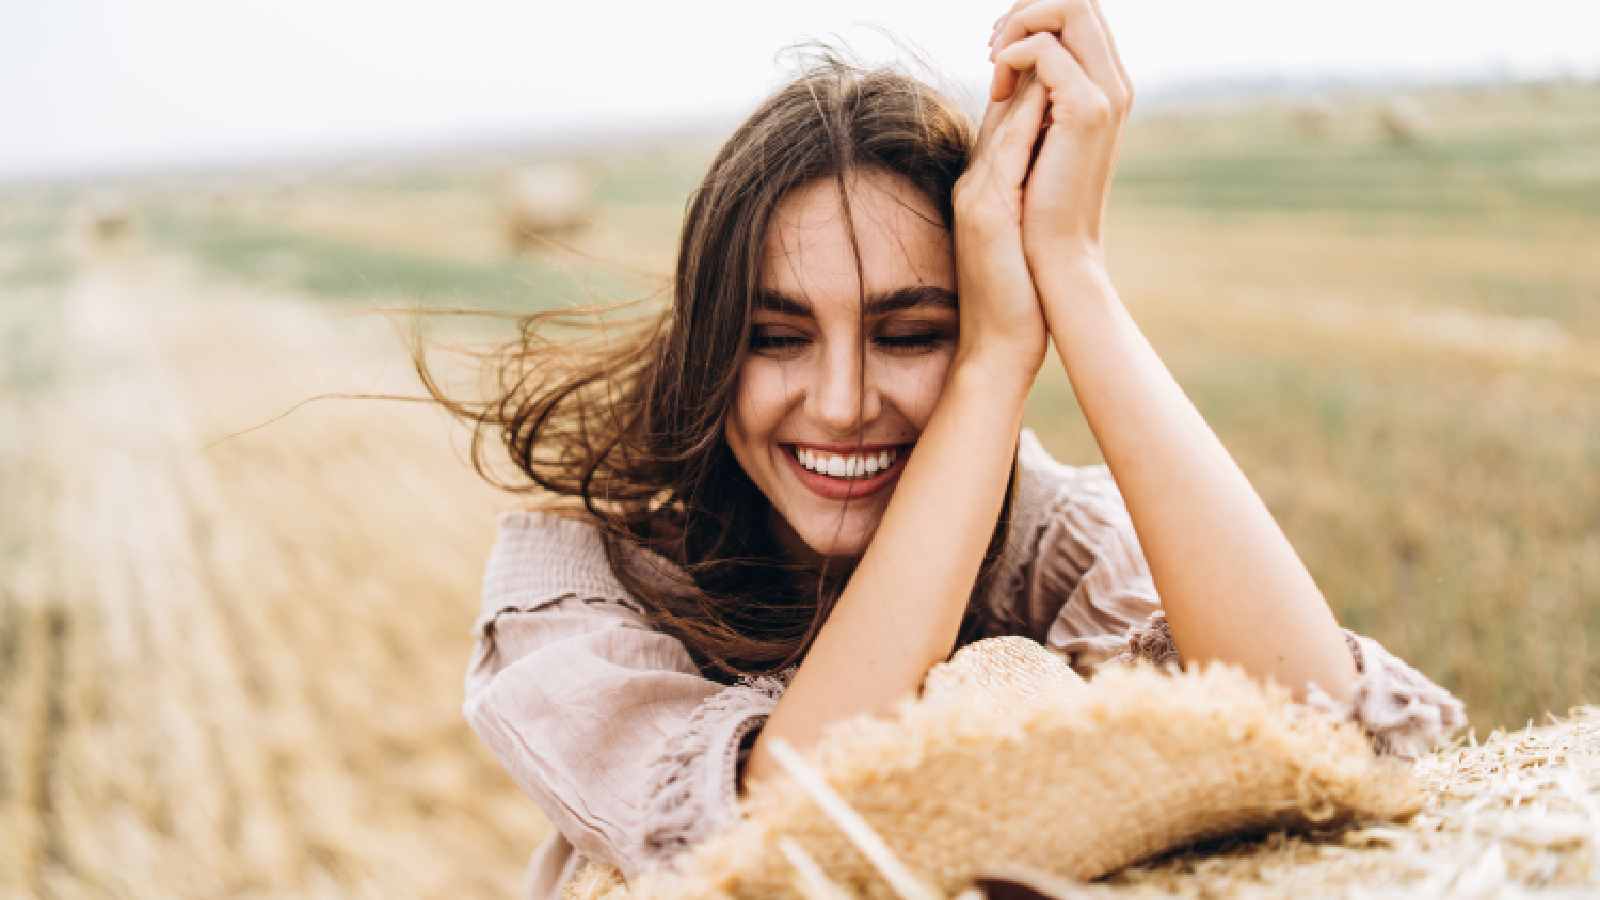 खुश रहने वाले लोगों में ये 5 आदतें होती हैं और आप इन्हें सीखकर उनकी खुशी बढ़ा सकते हैं।